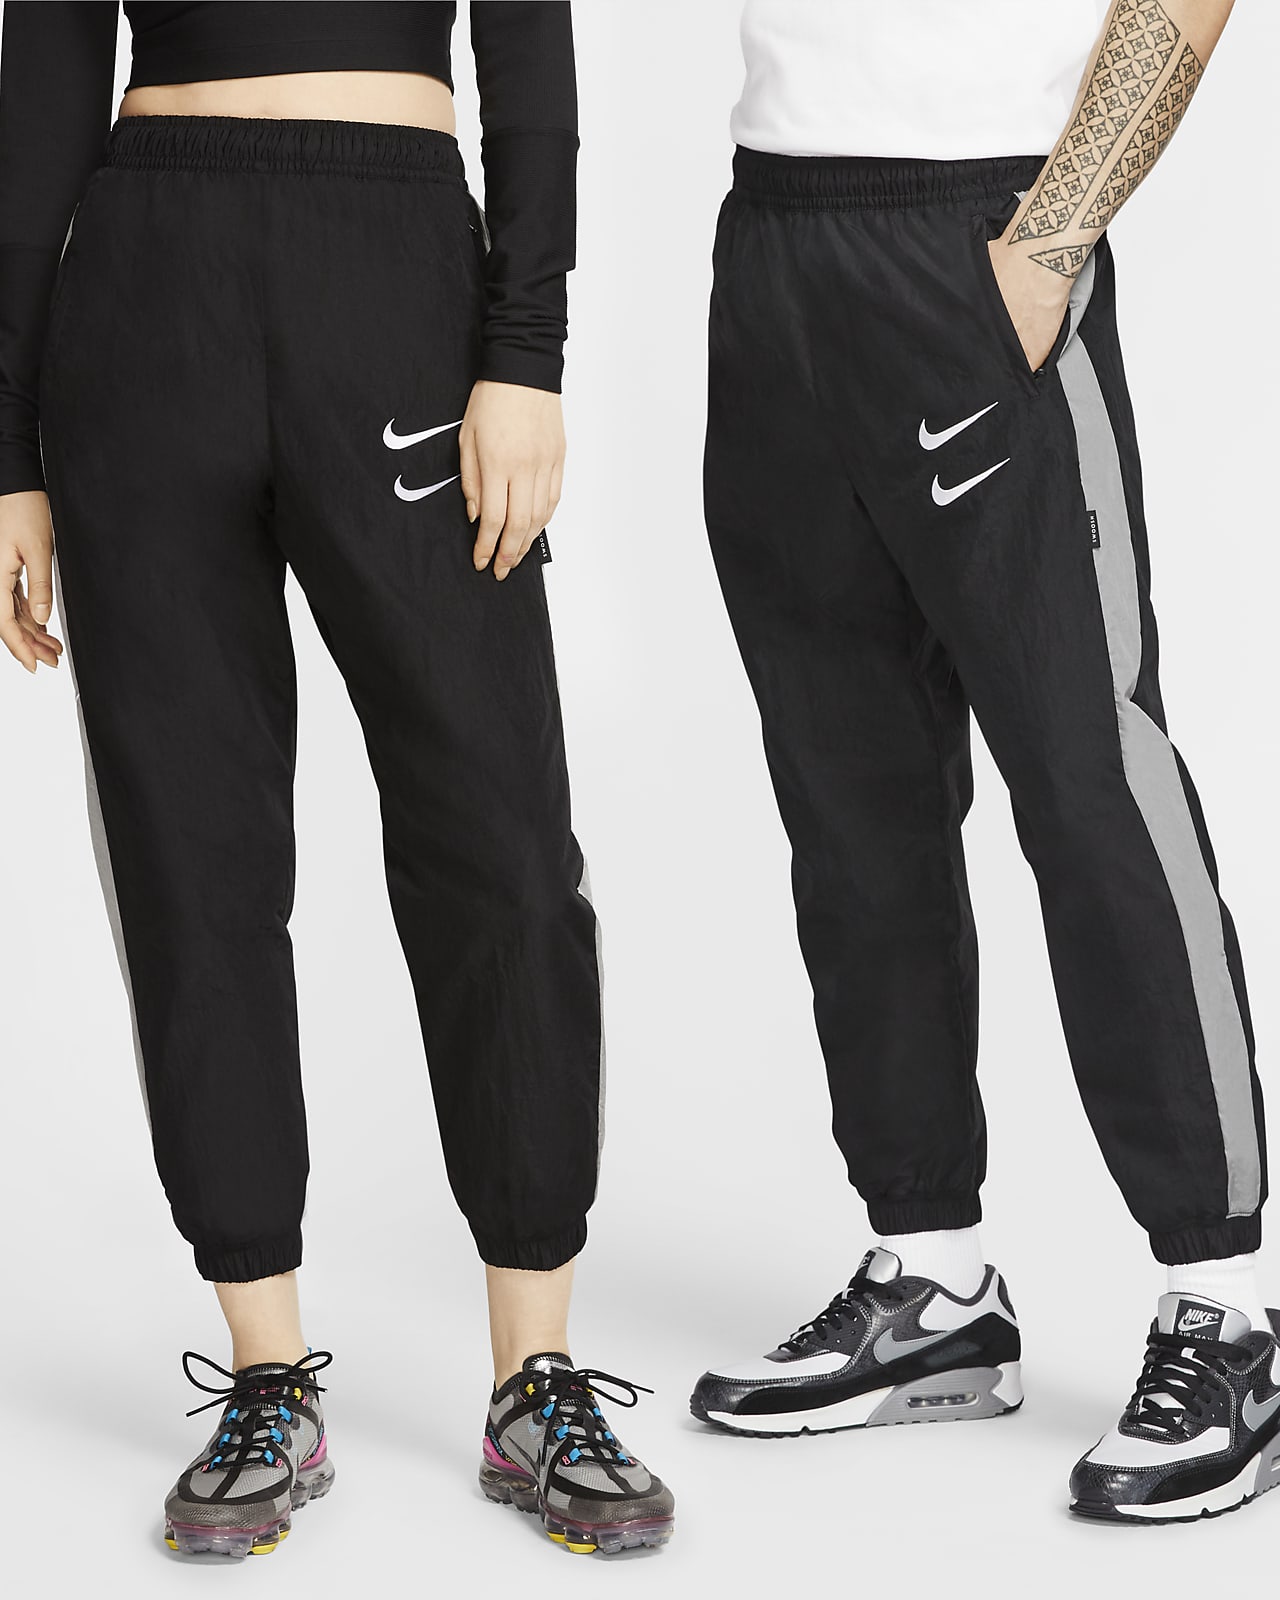 Nike Sportswear Swoosh Woven Trousers.